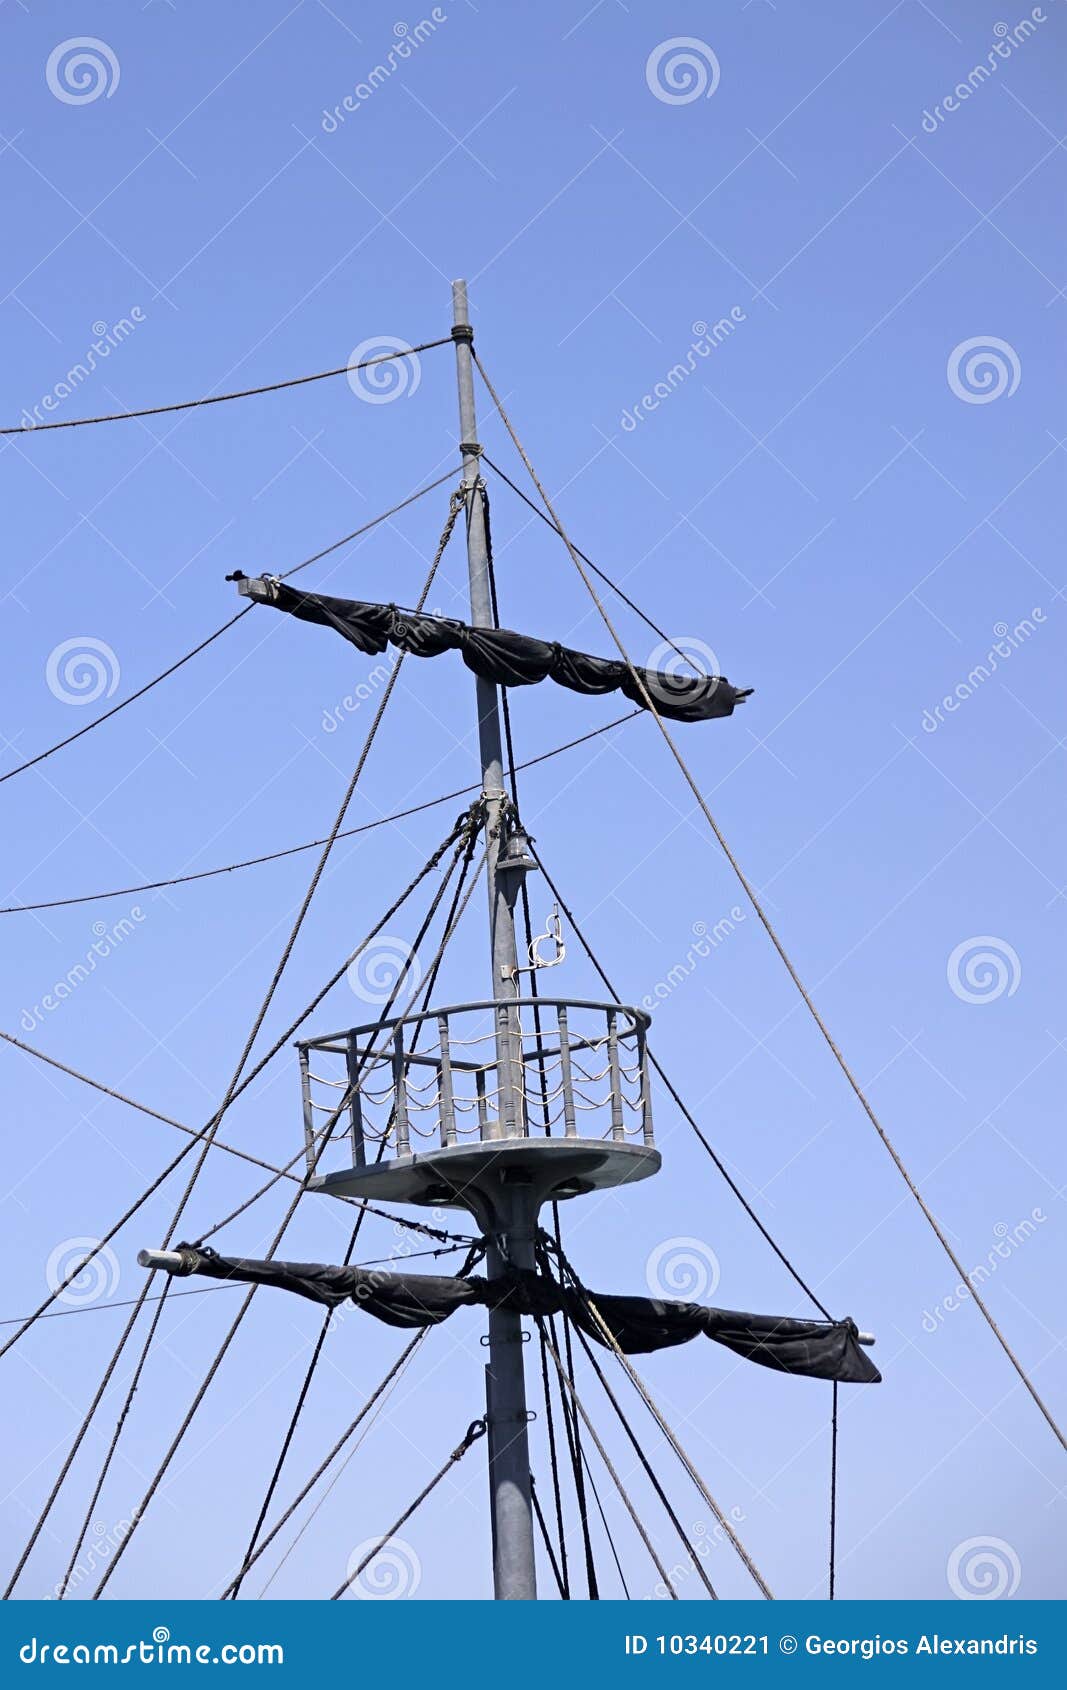 Old Mast Stock Image - Image: 10340221